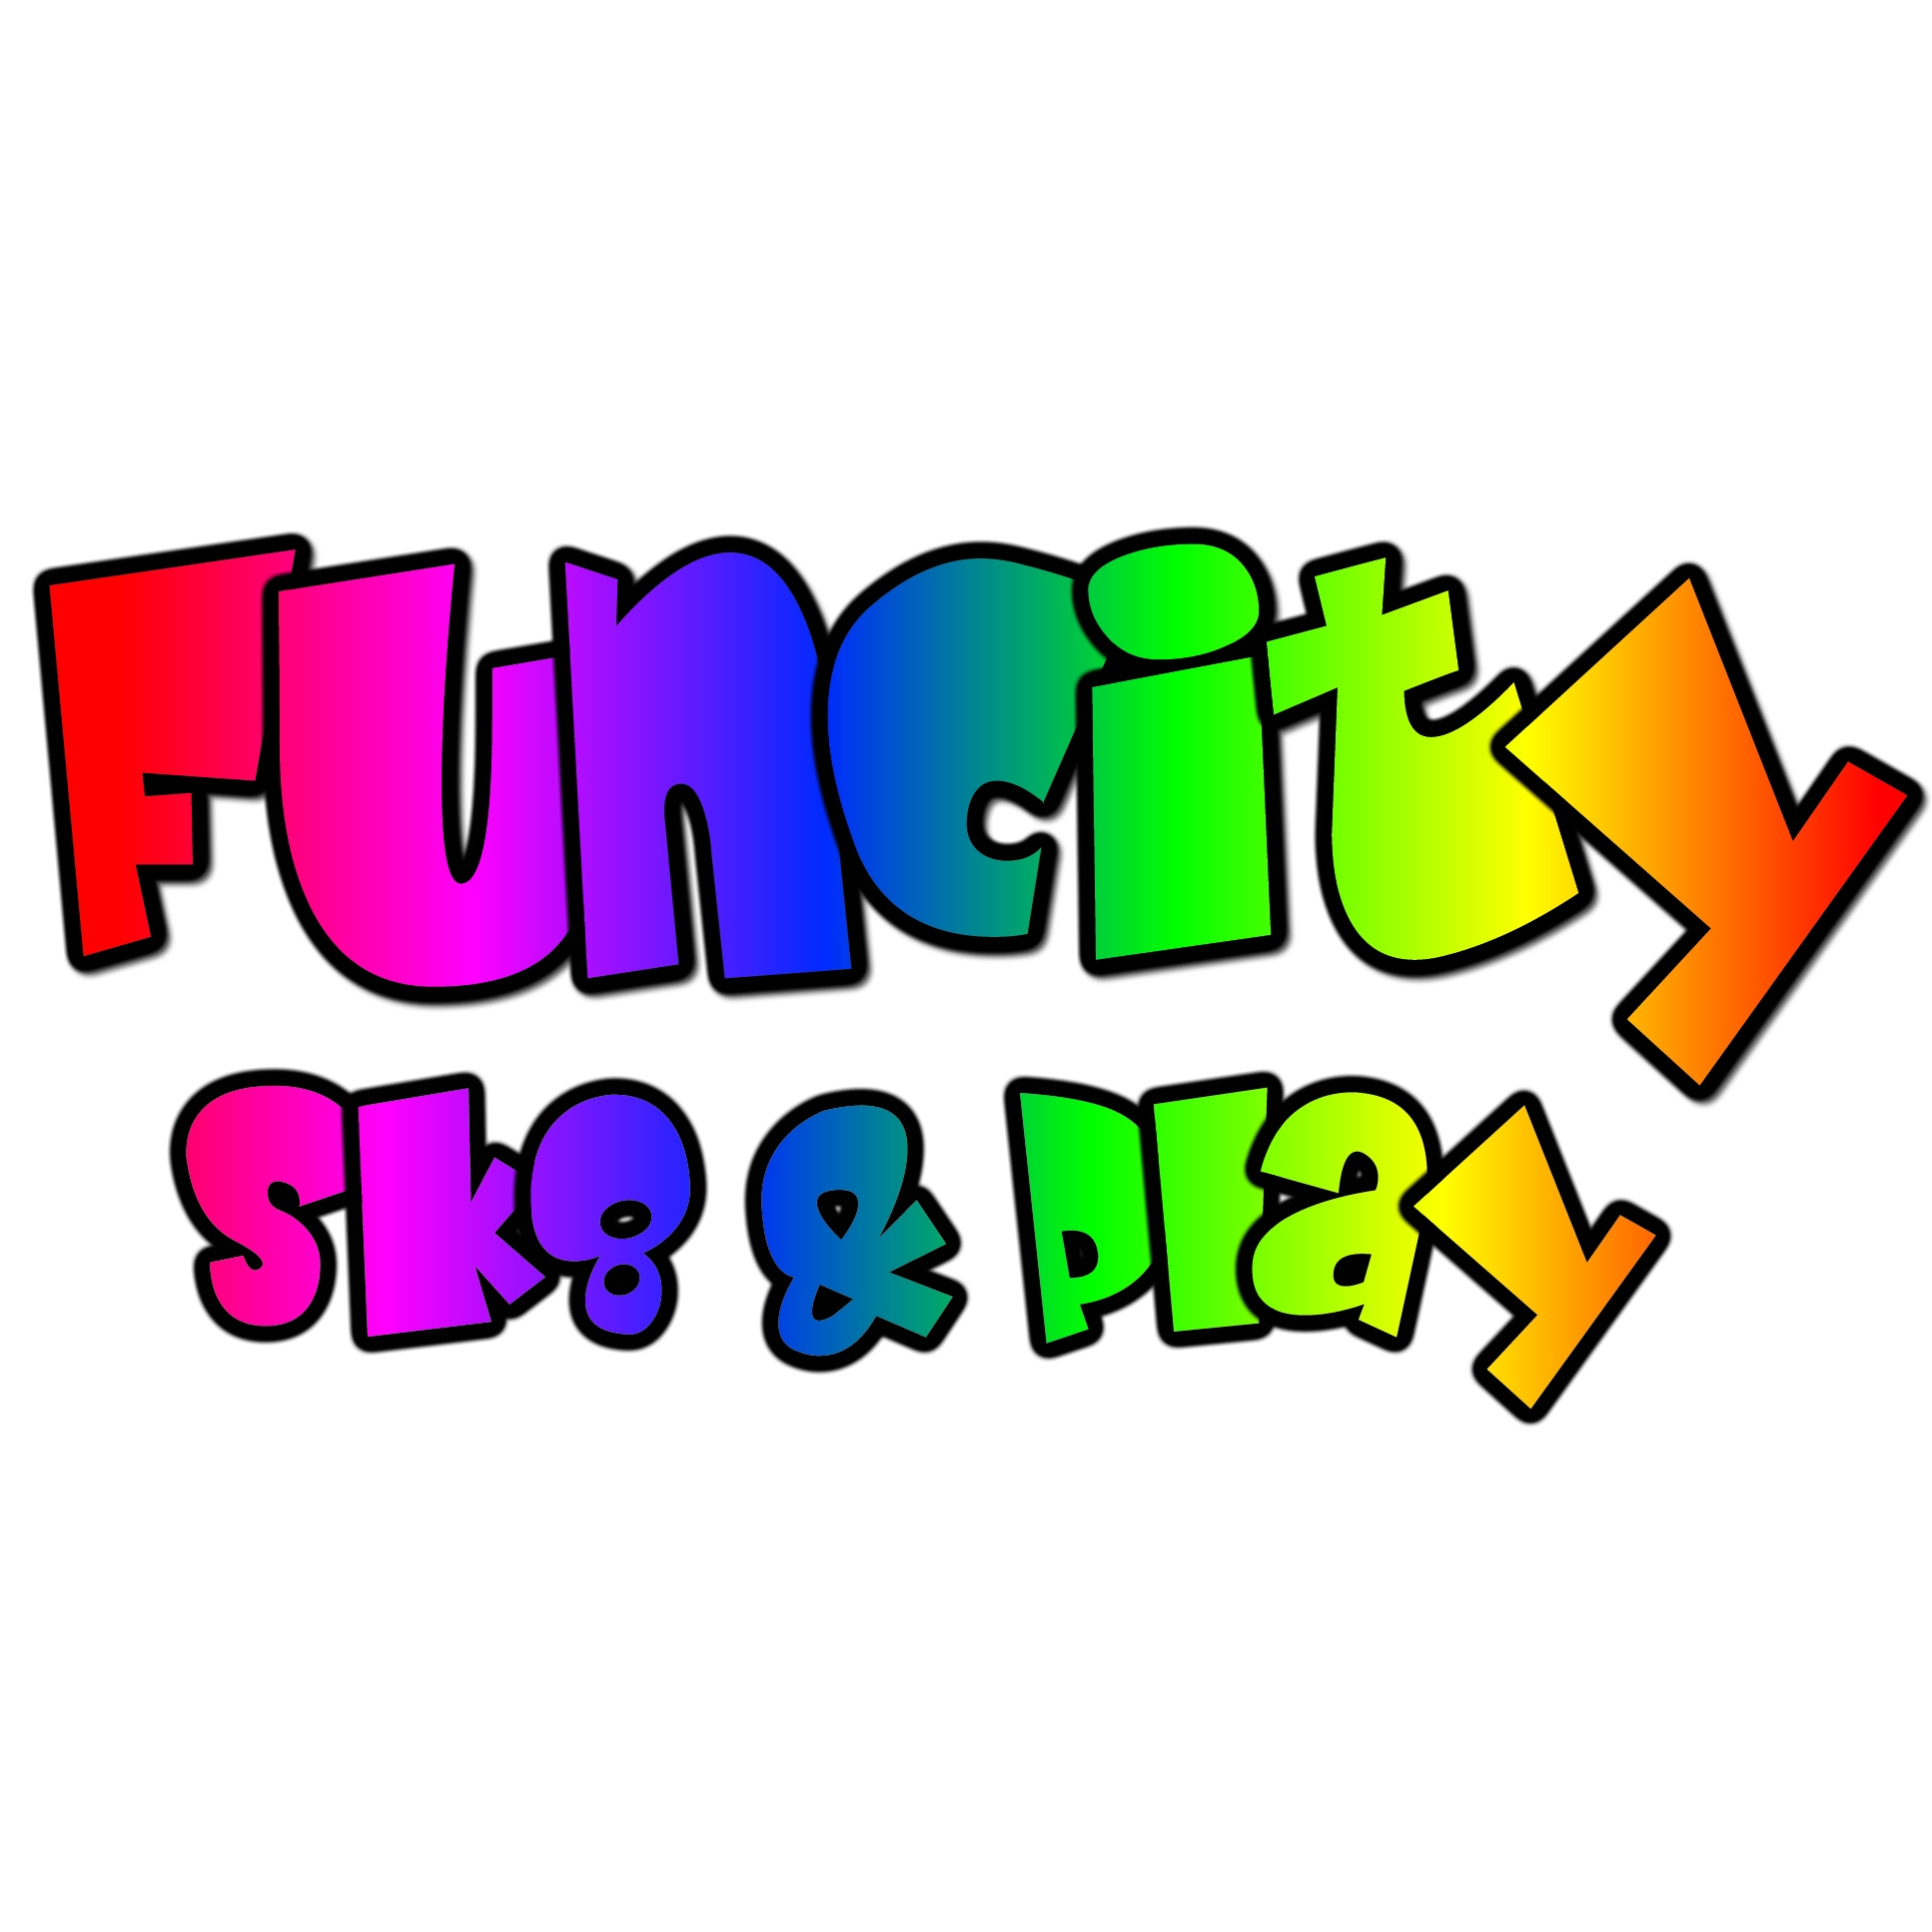 Funcity Sk8 - Webster, TX 77598 - (281)332-4211 | ShowMeLocal.com